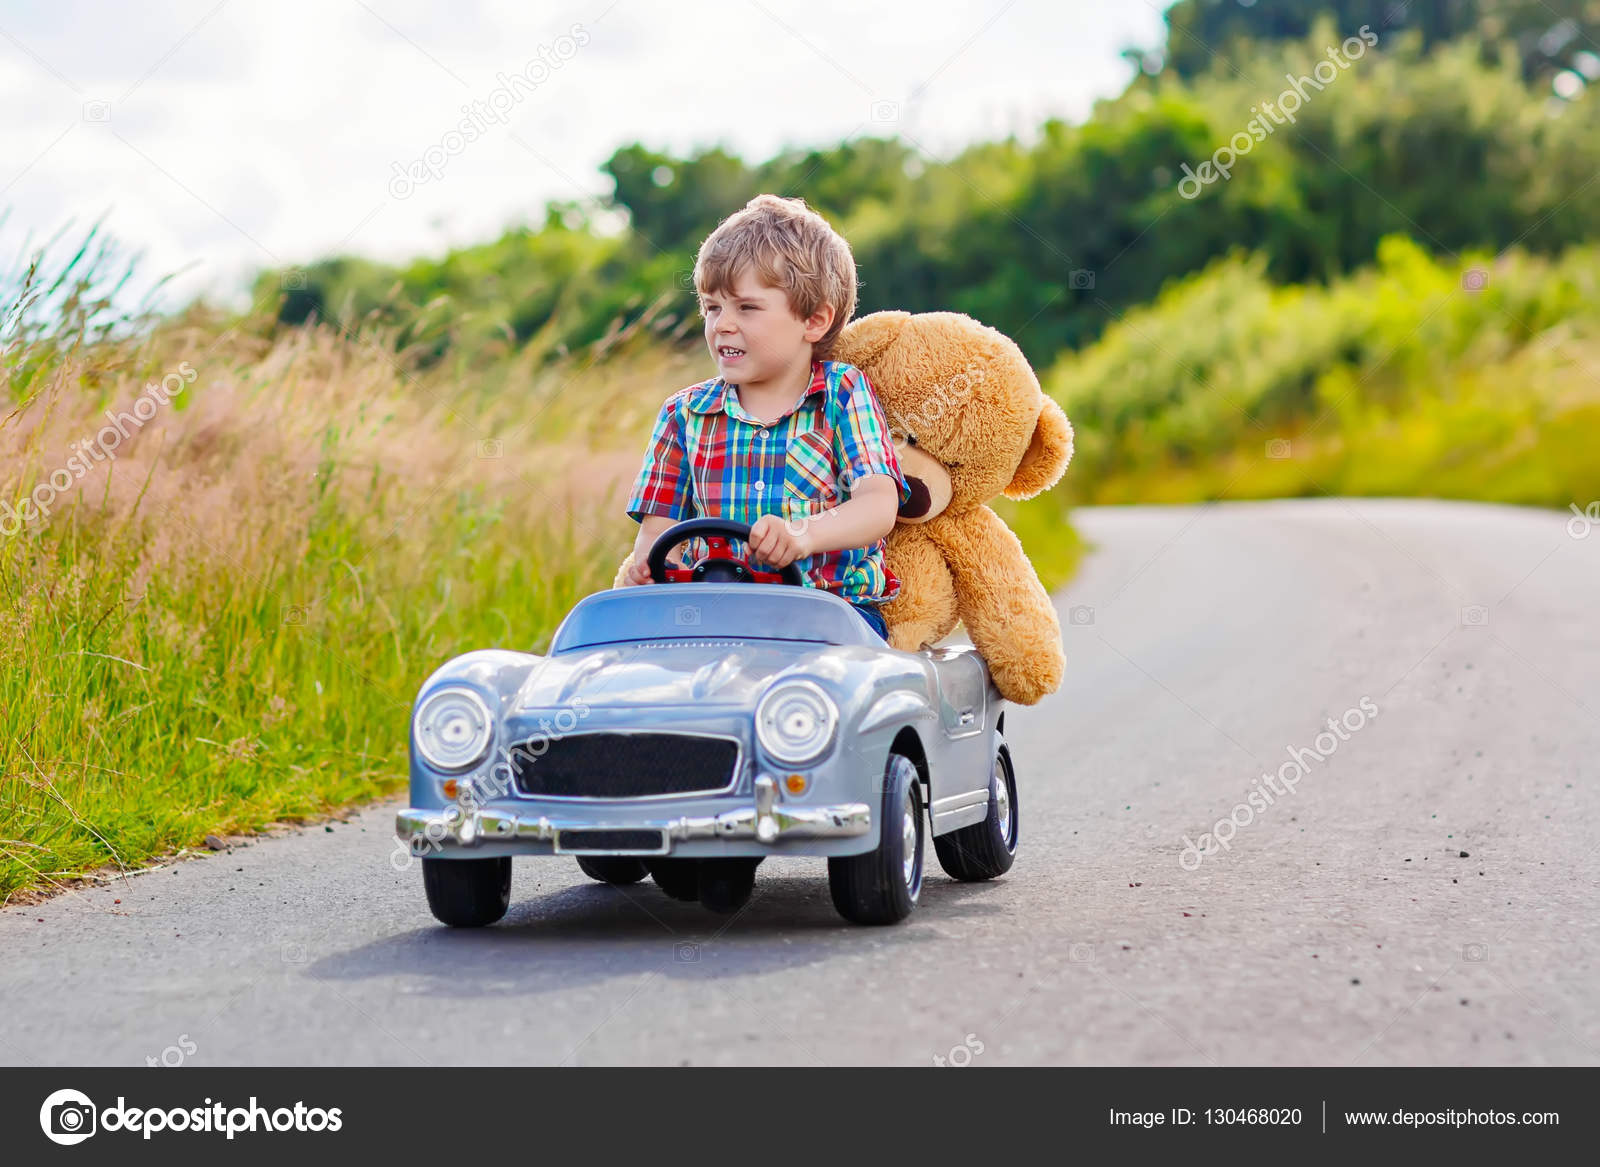 Bebê De 1 Ano De Idade Da Rússia Andando Num Carro De Brinquedo Pequeno E  Colorido No Local De Jogo Na Hora Do Dia Imagem de Stock - Imagem de  sorriso, taiwanês: 185423211